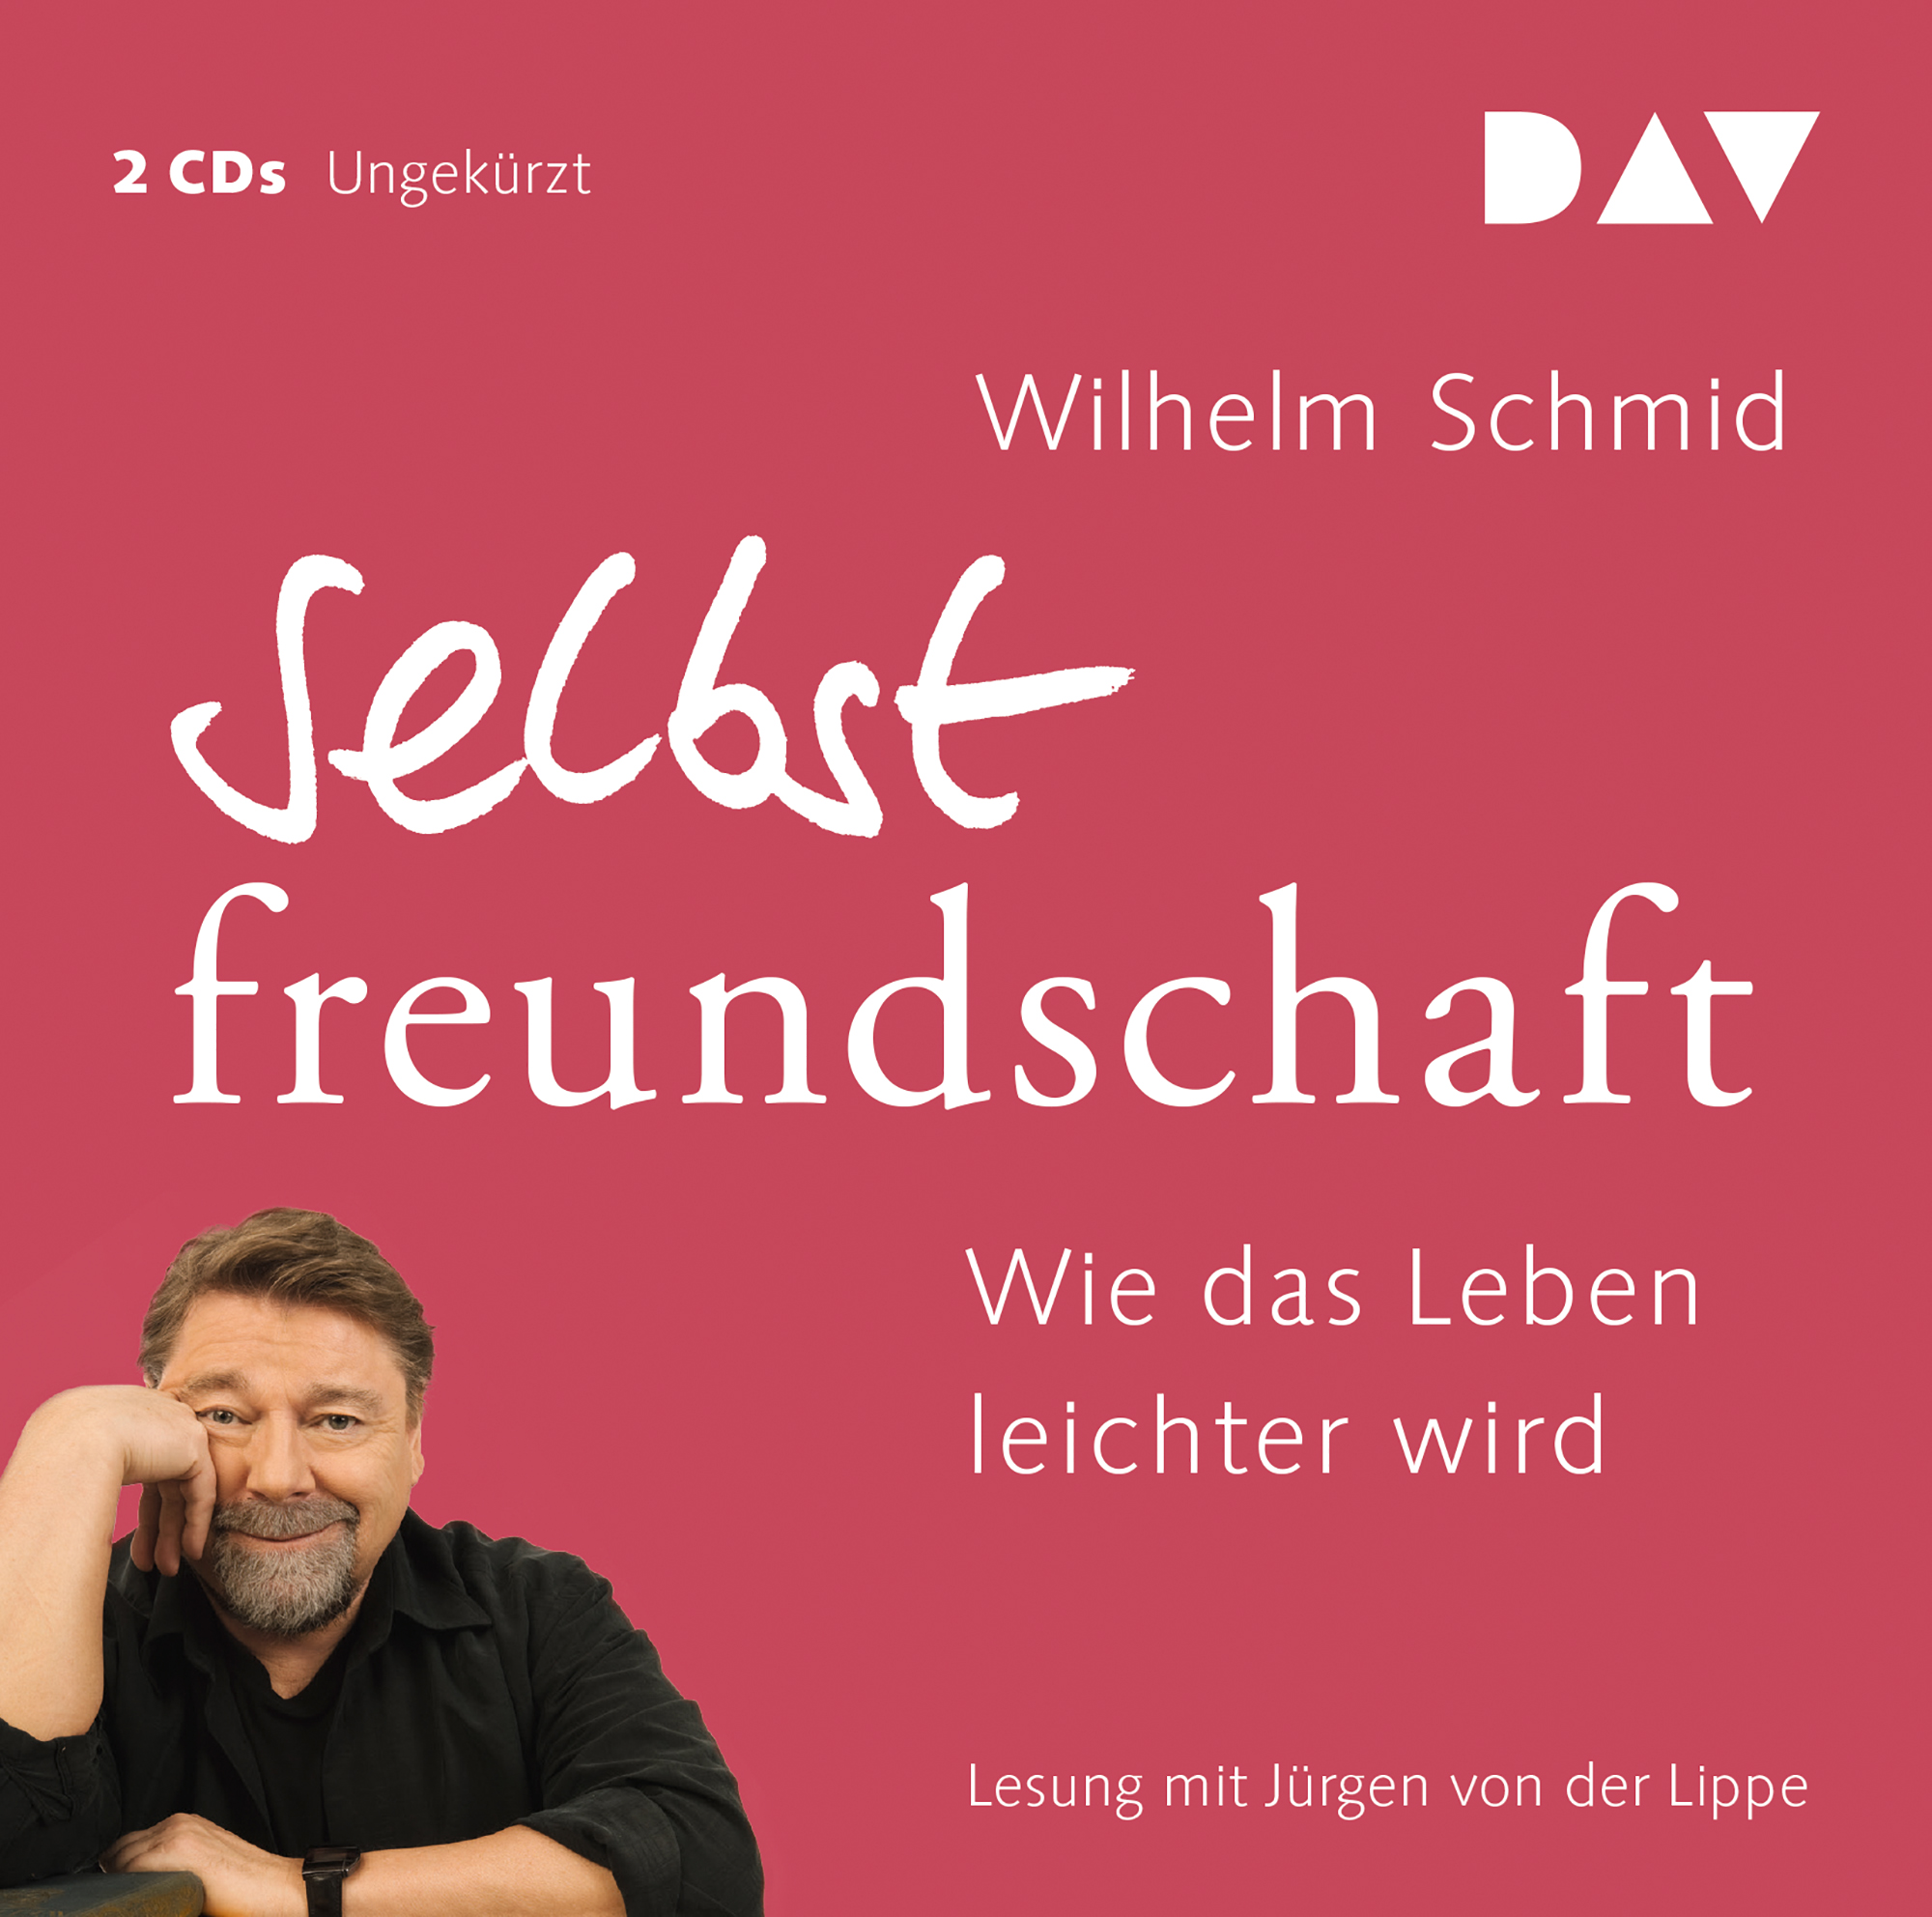 Schmid - Selbstfreundschaft_Covercard_V2.indd